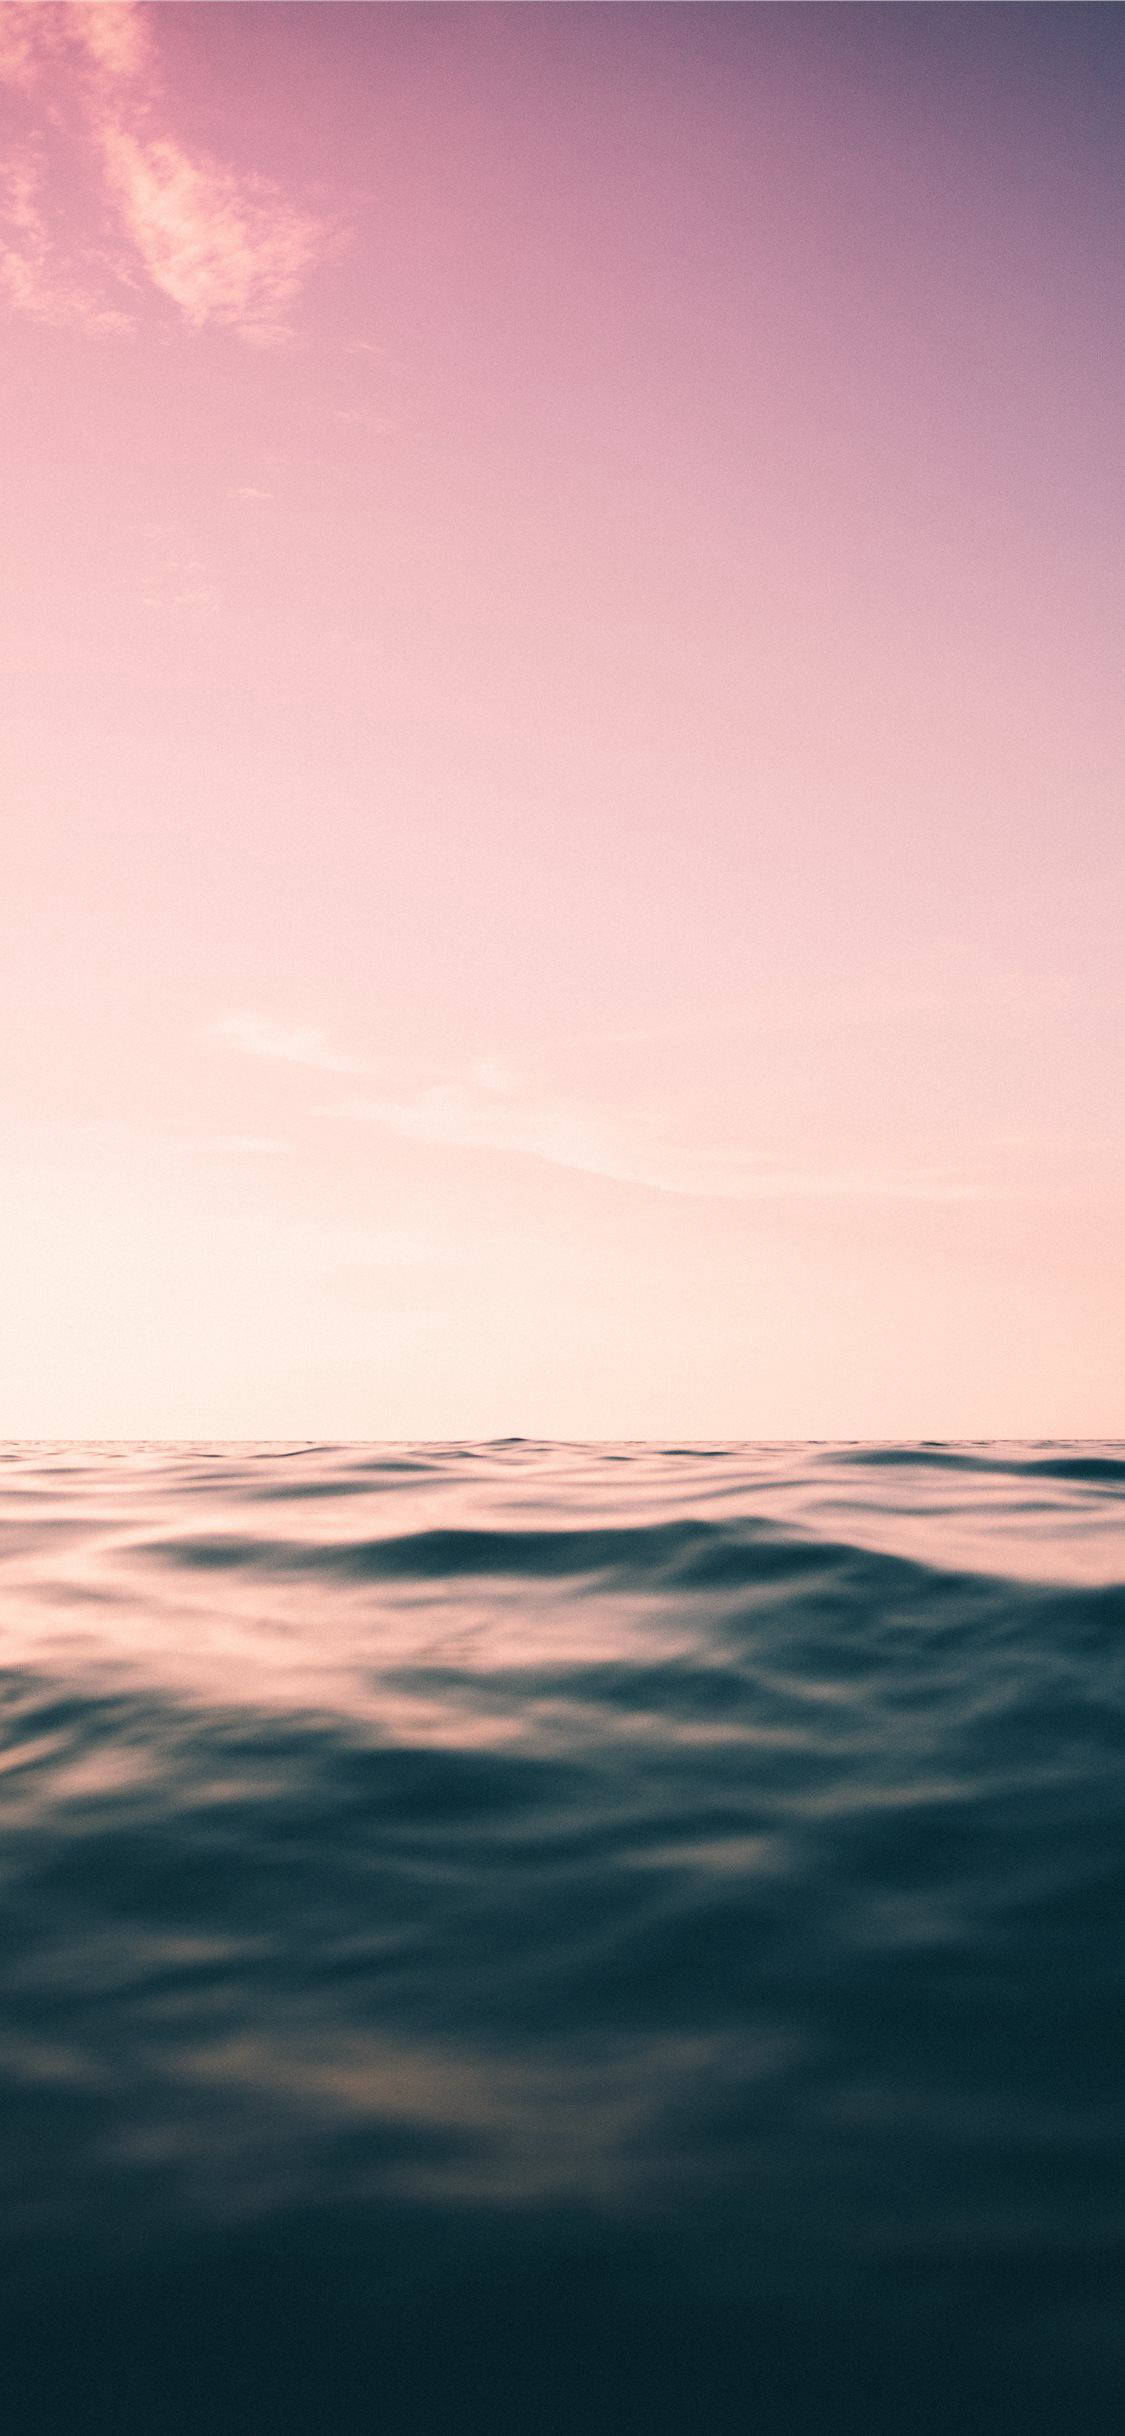 эстетичная океанская вода для iphone